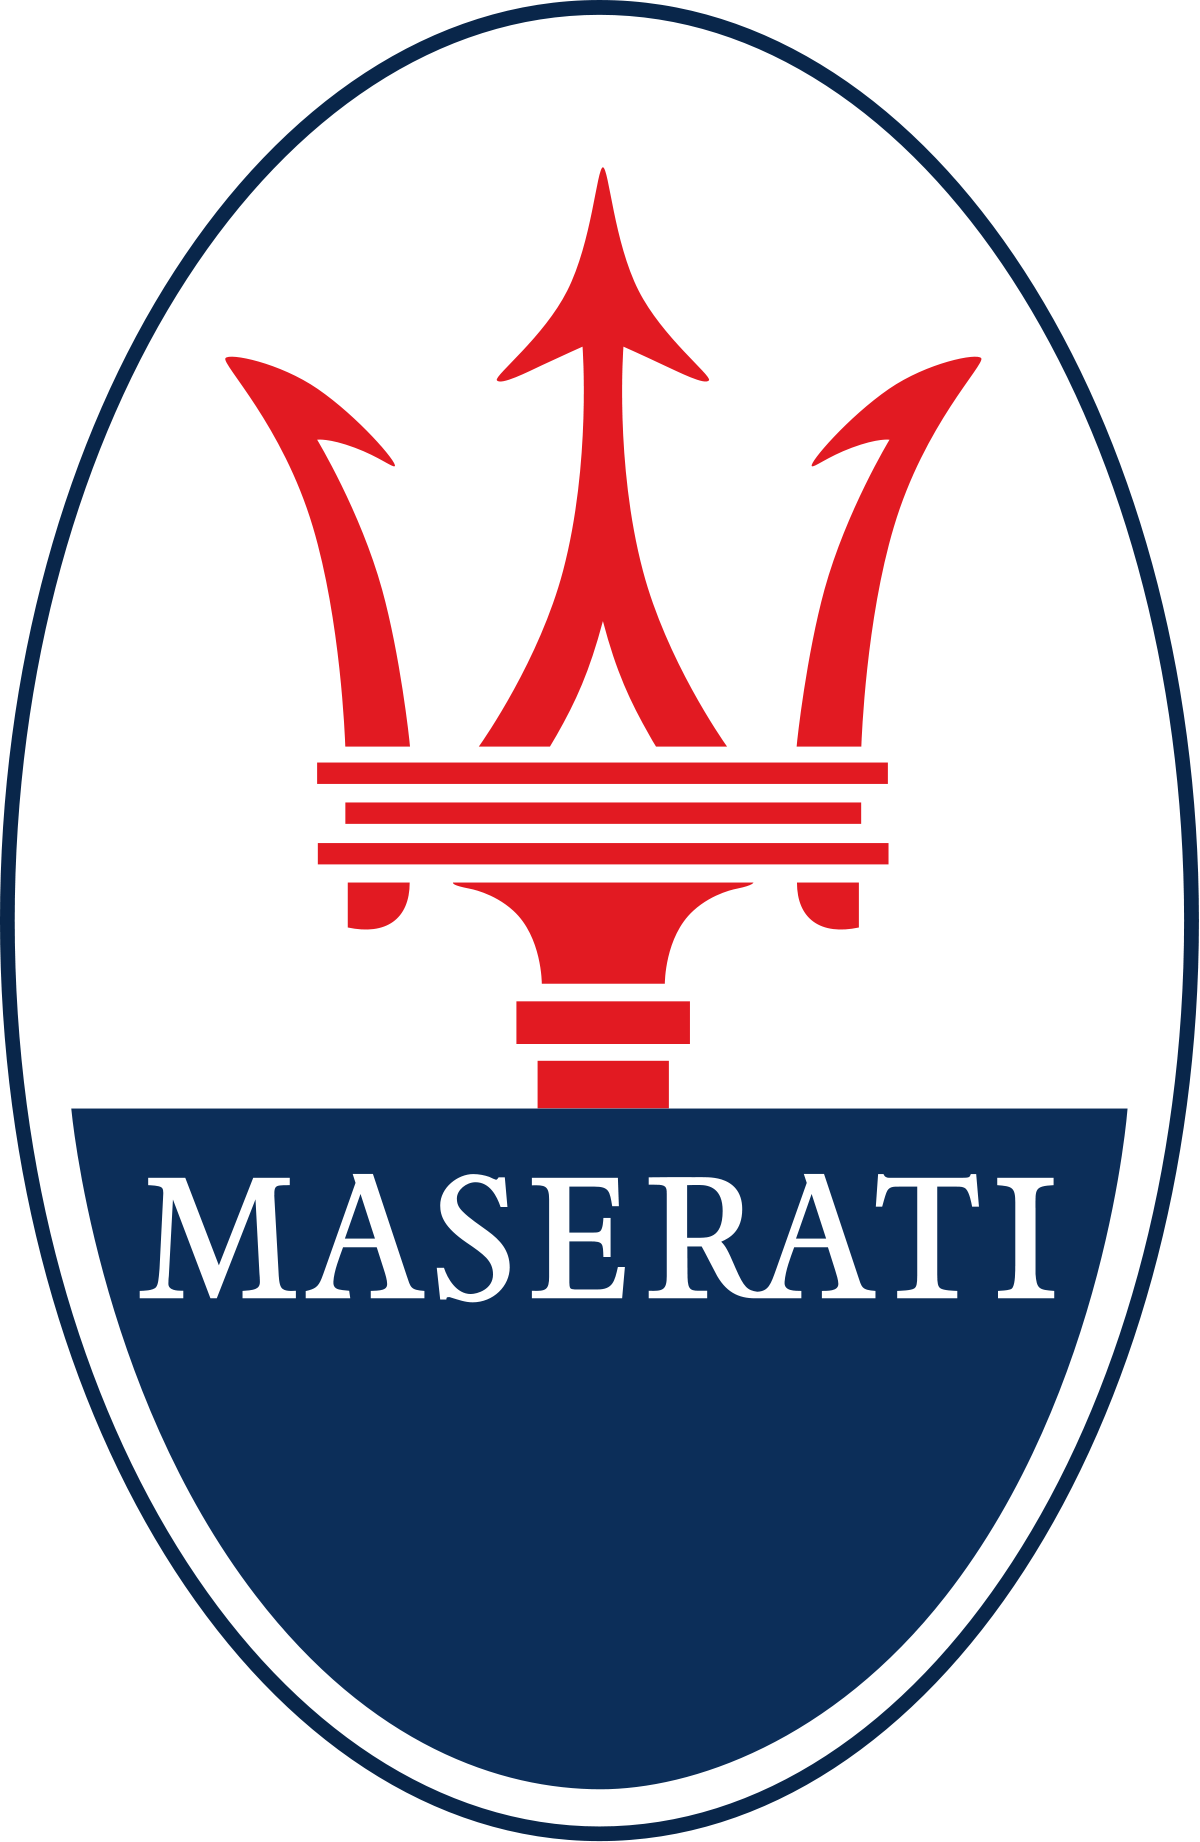 Kit direction assistée électrique Maserati de collection, Ghibli, Mistral, Mexico et 2500GT